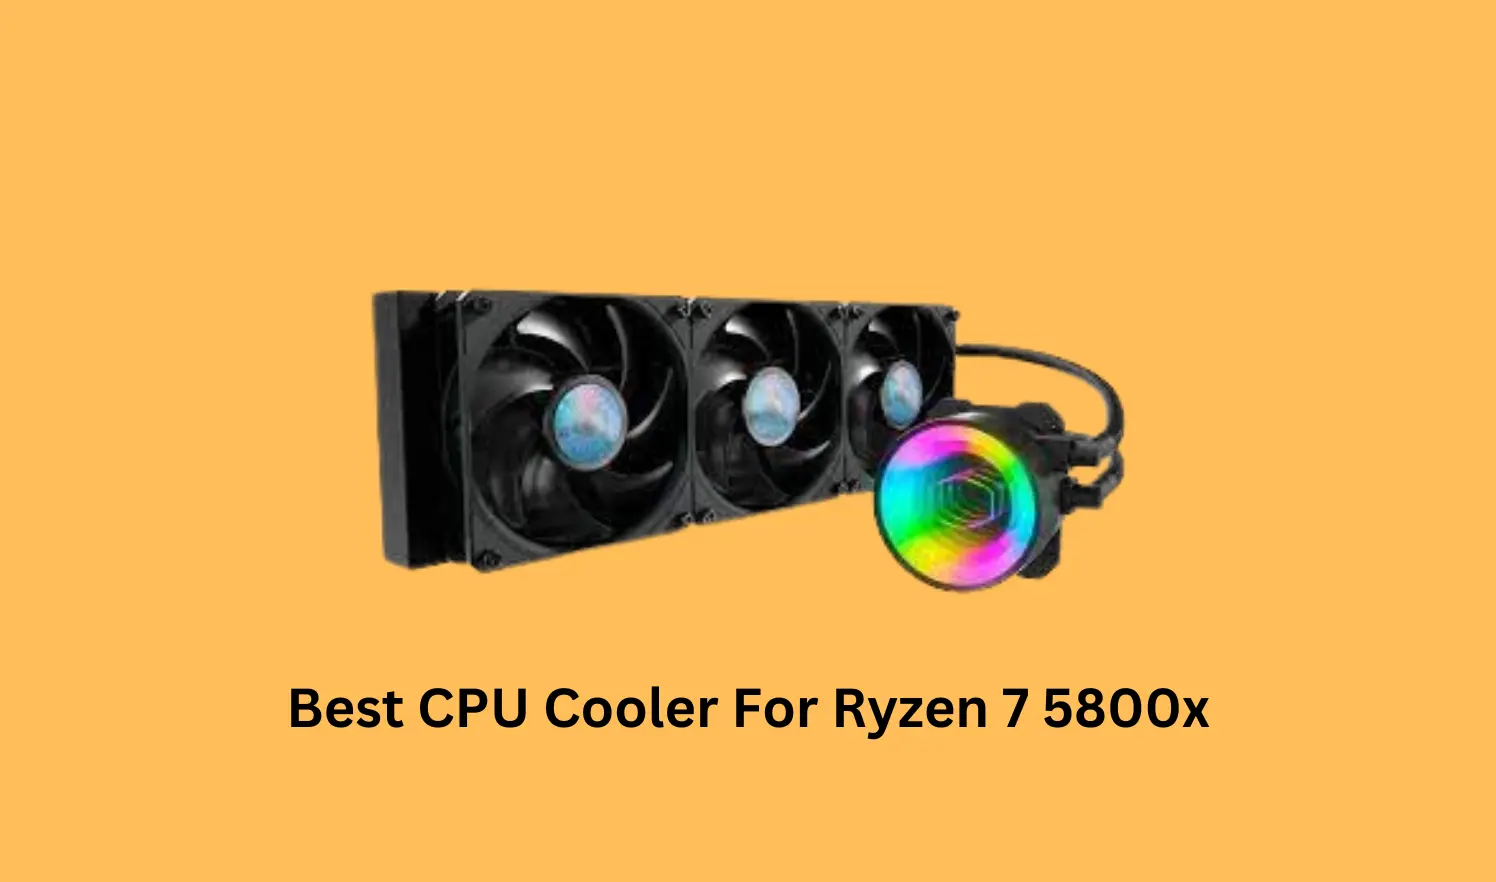 Best CPU Cooler For Ryzen 7 5800x